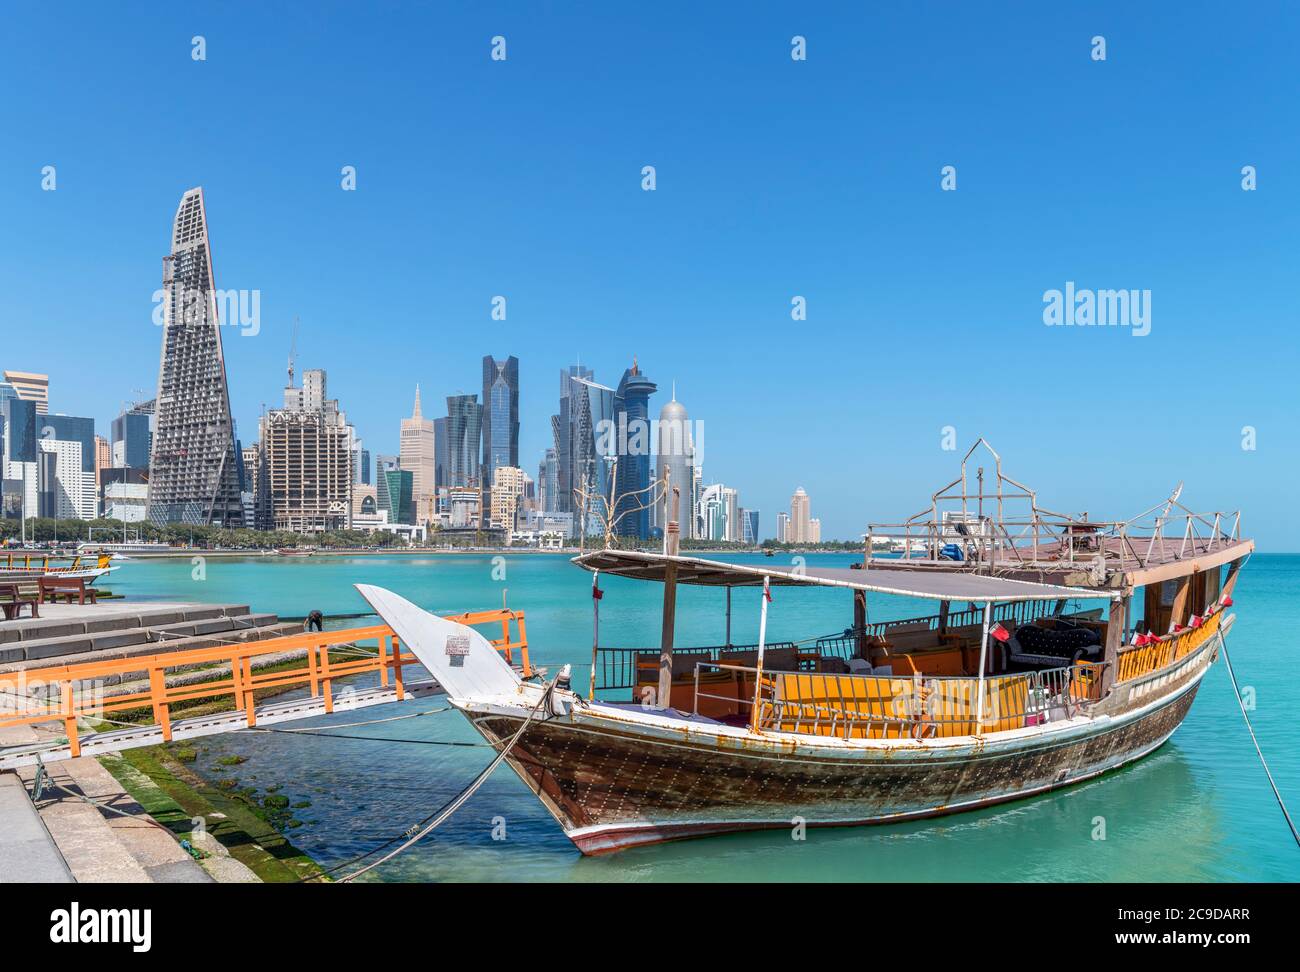 Les gratte-ciel du quartier des affaires central de West Bay depuis la Corniche, Doha, Qatar, Moyen-Orient Banque D'Images